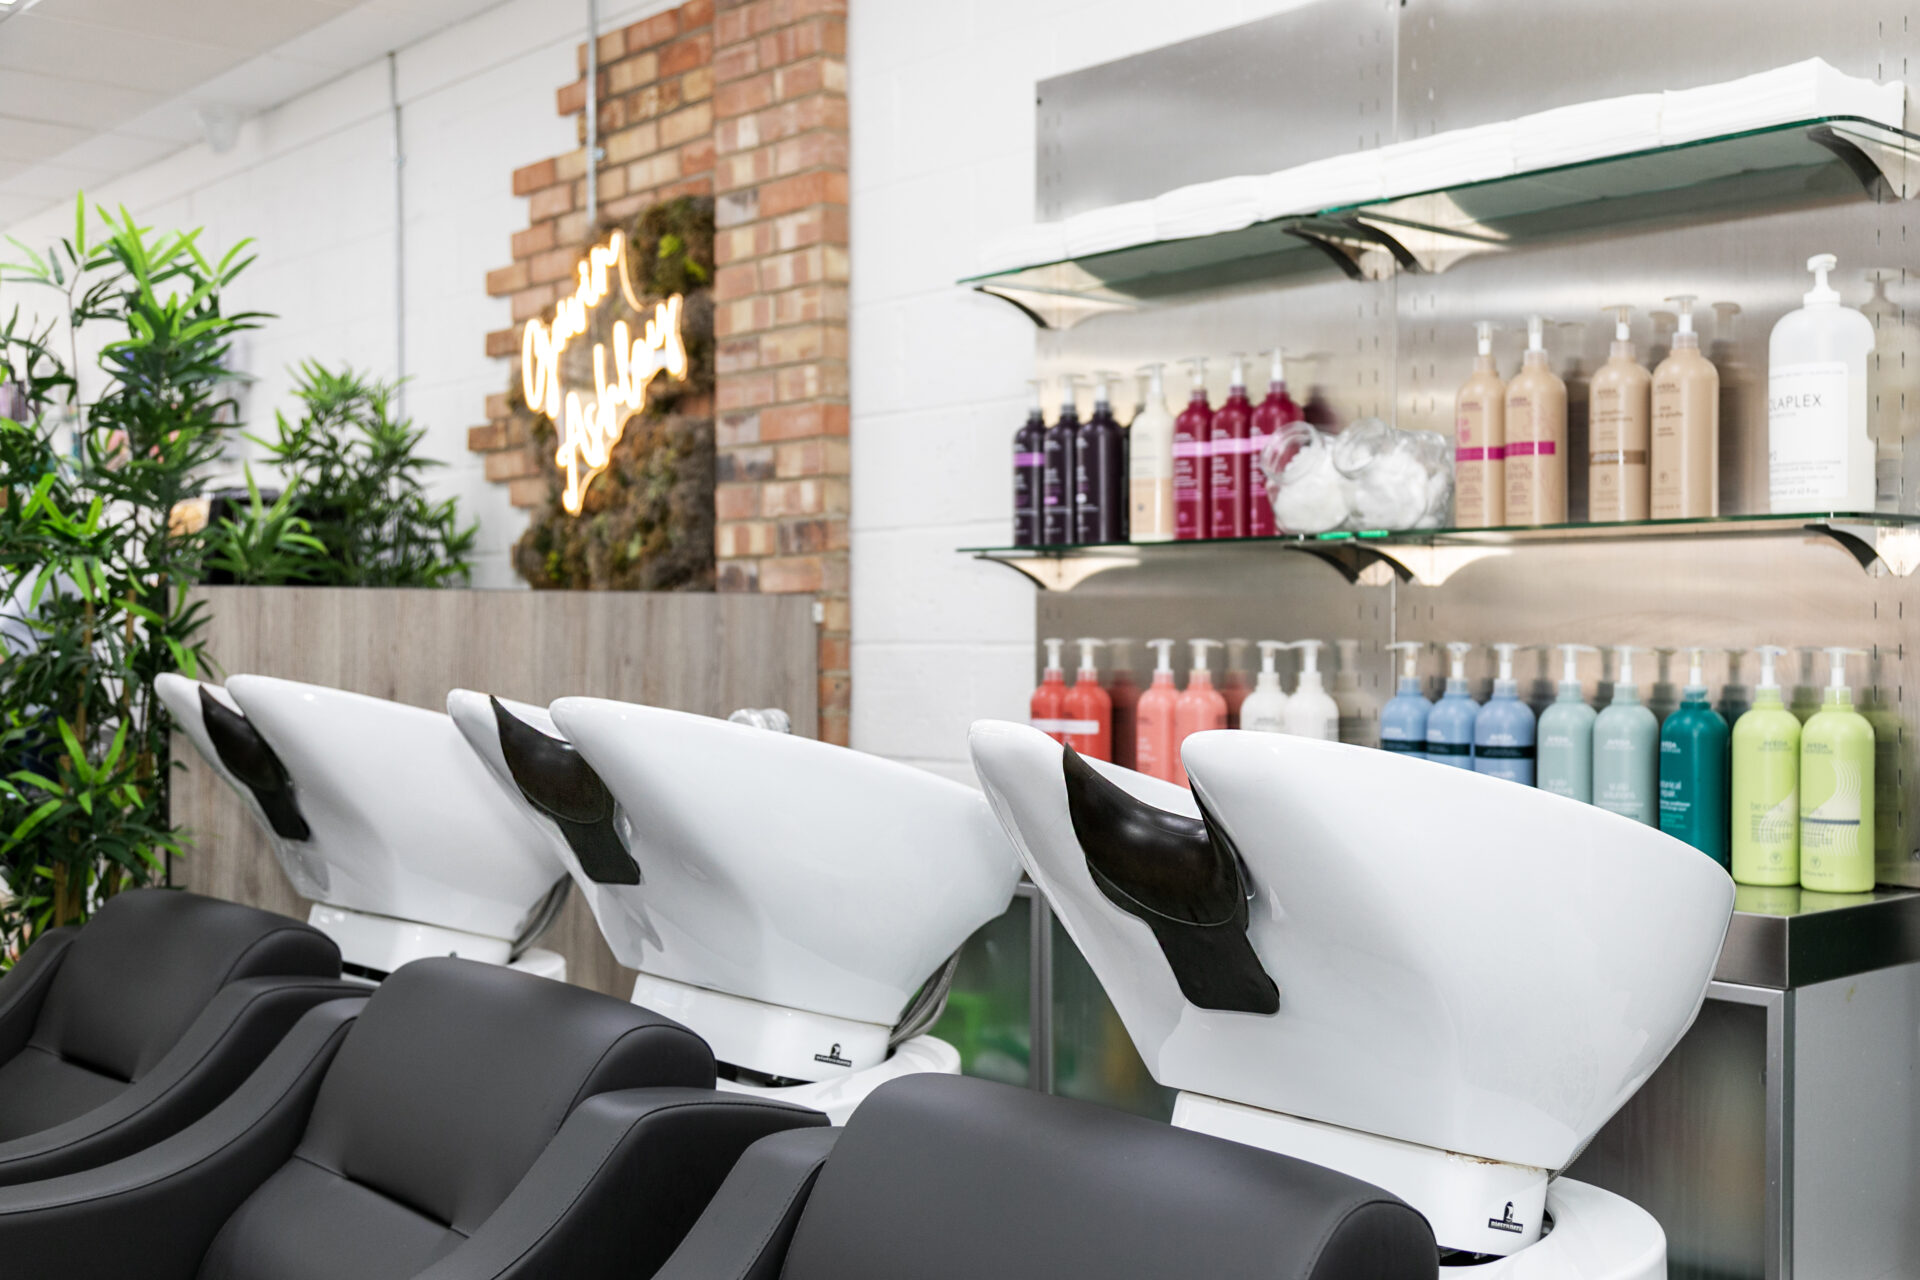 Visit Bury St Edmunds Leading Hair Salon - Gavin Ashley Hairdressing